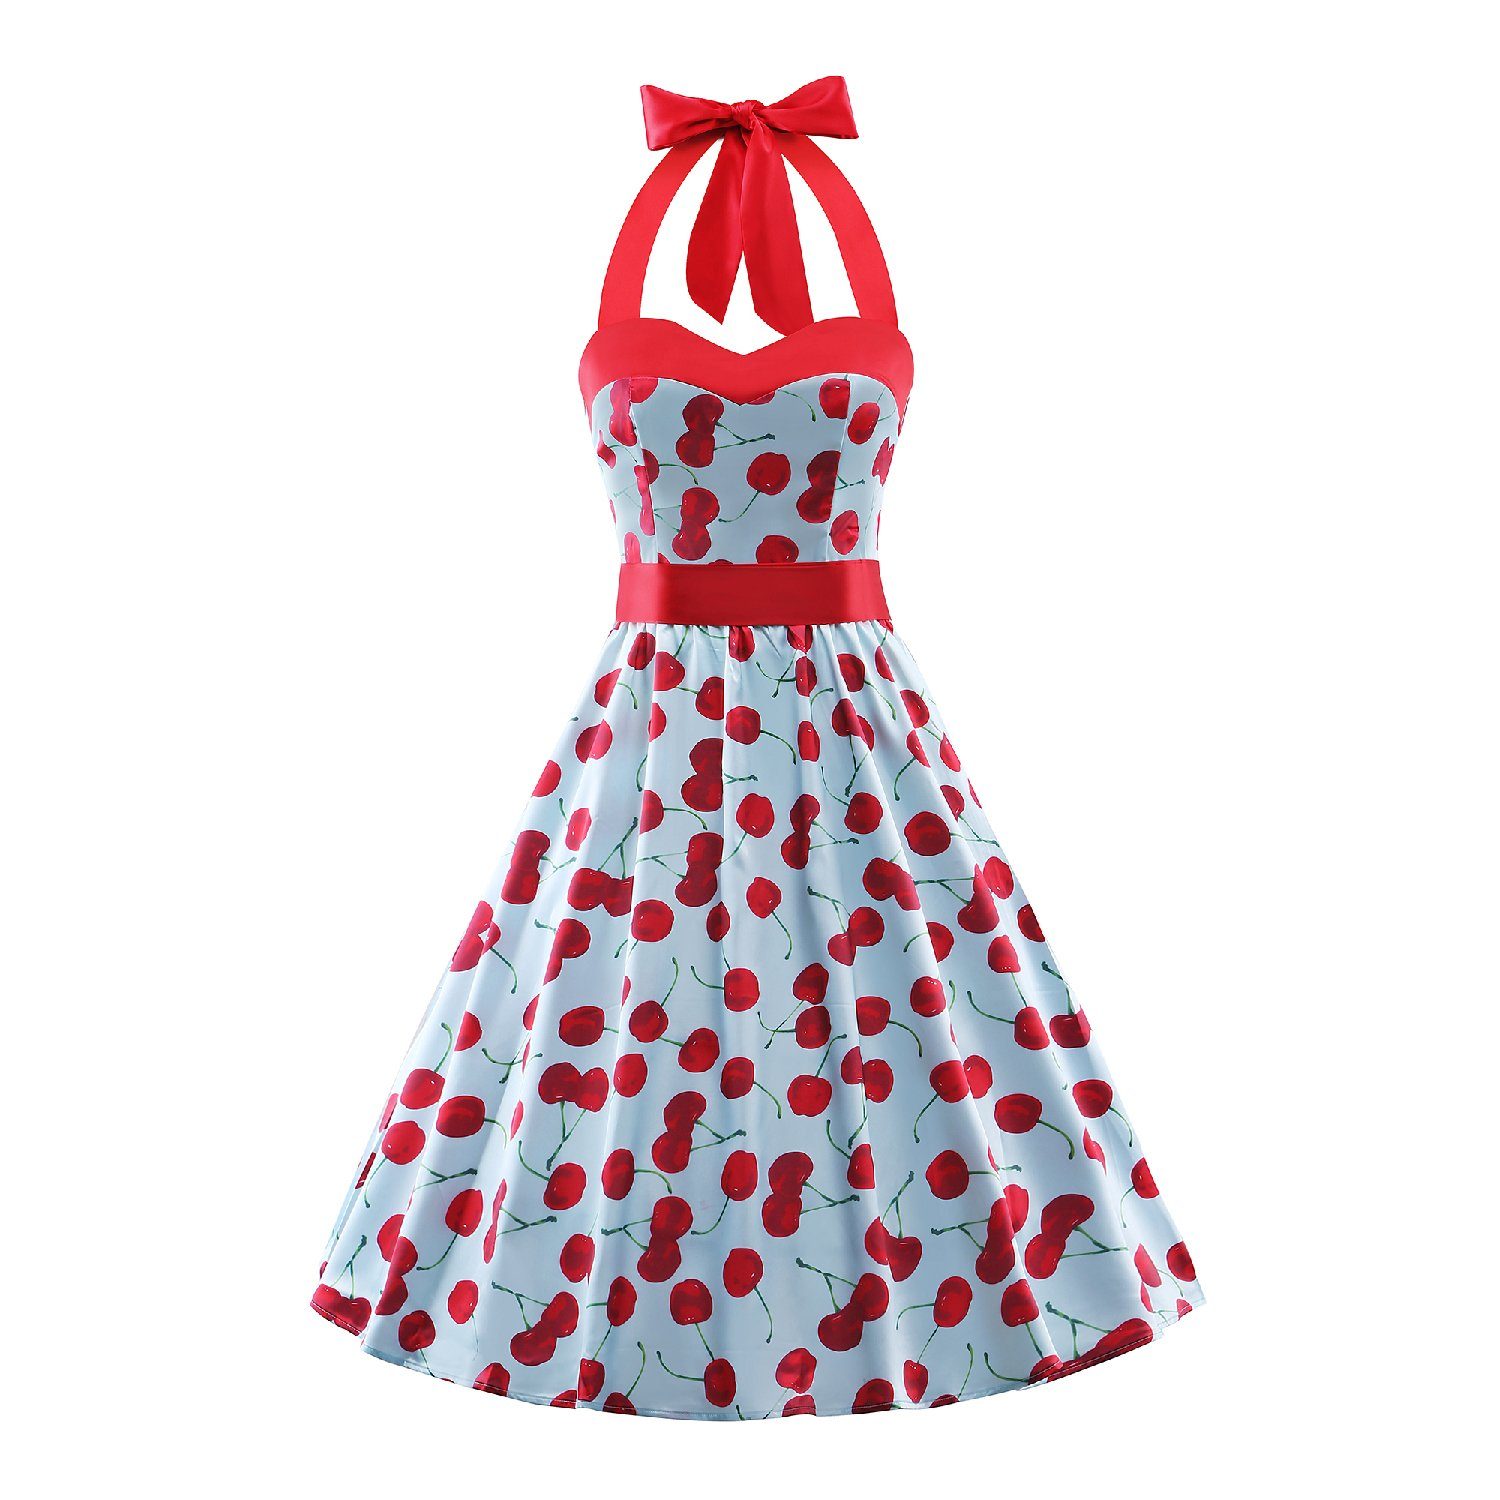 Polka Dots Halter Neck Dress Audrey Hepburn Floral Vintage Swing Dresses 50s